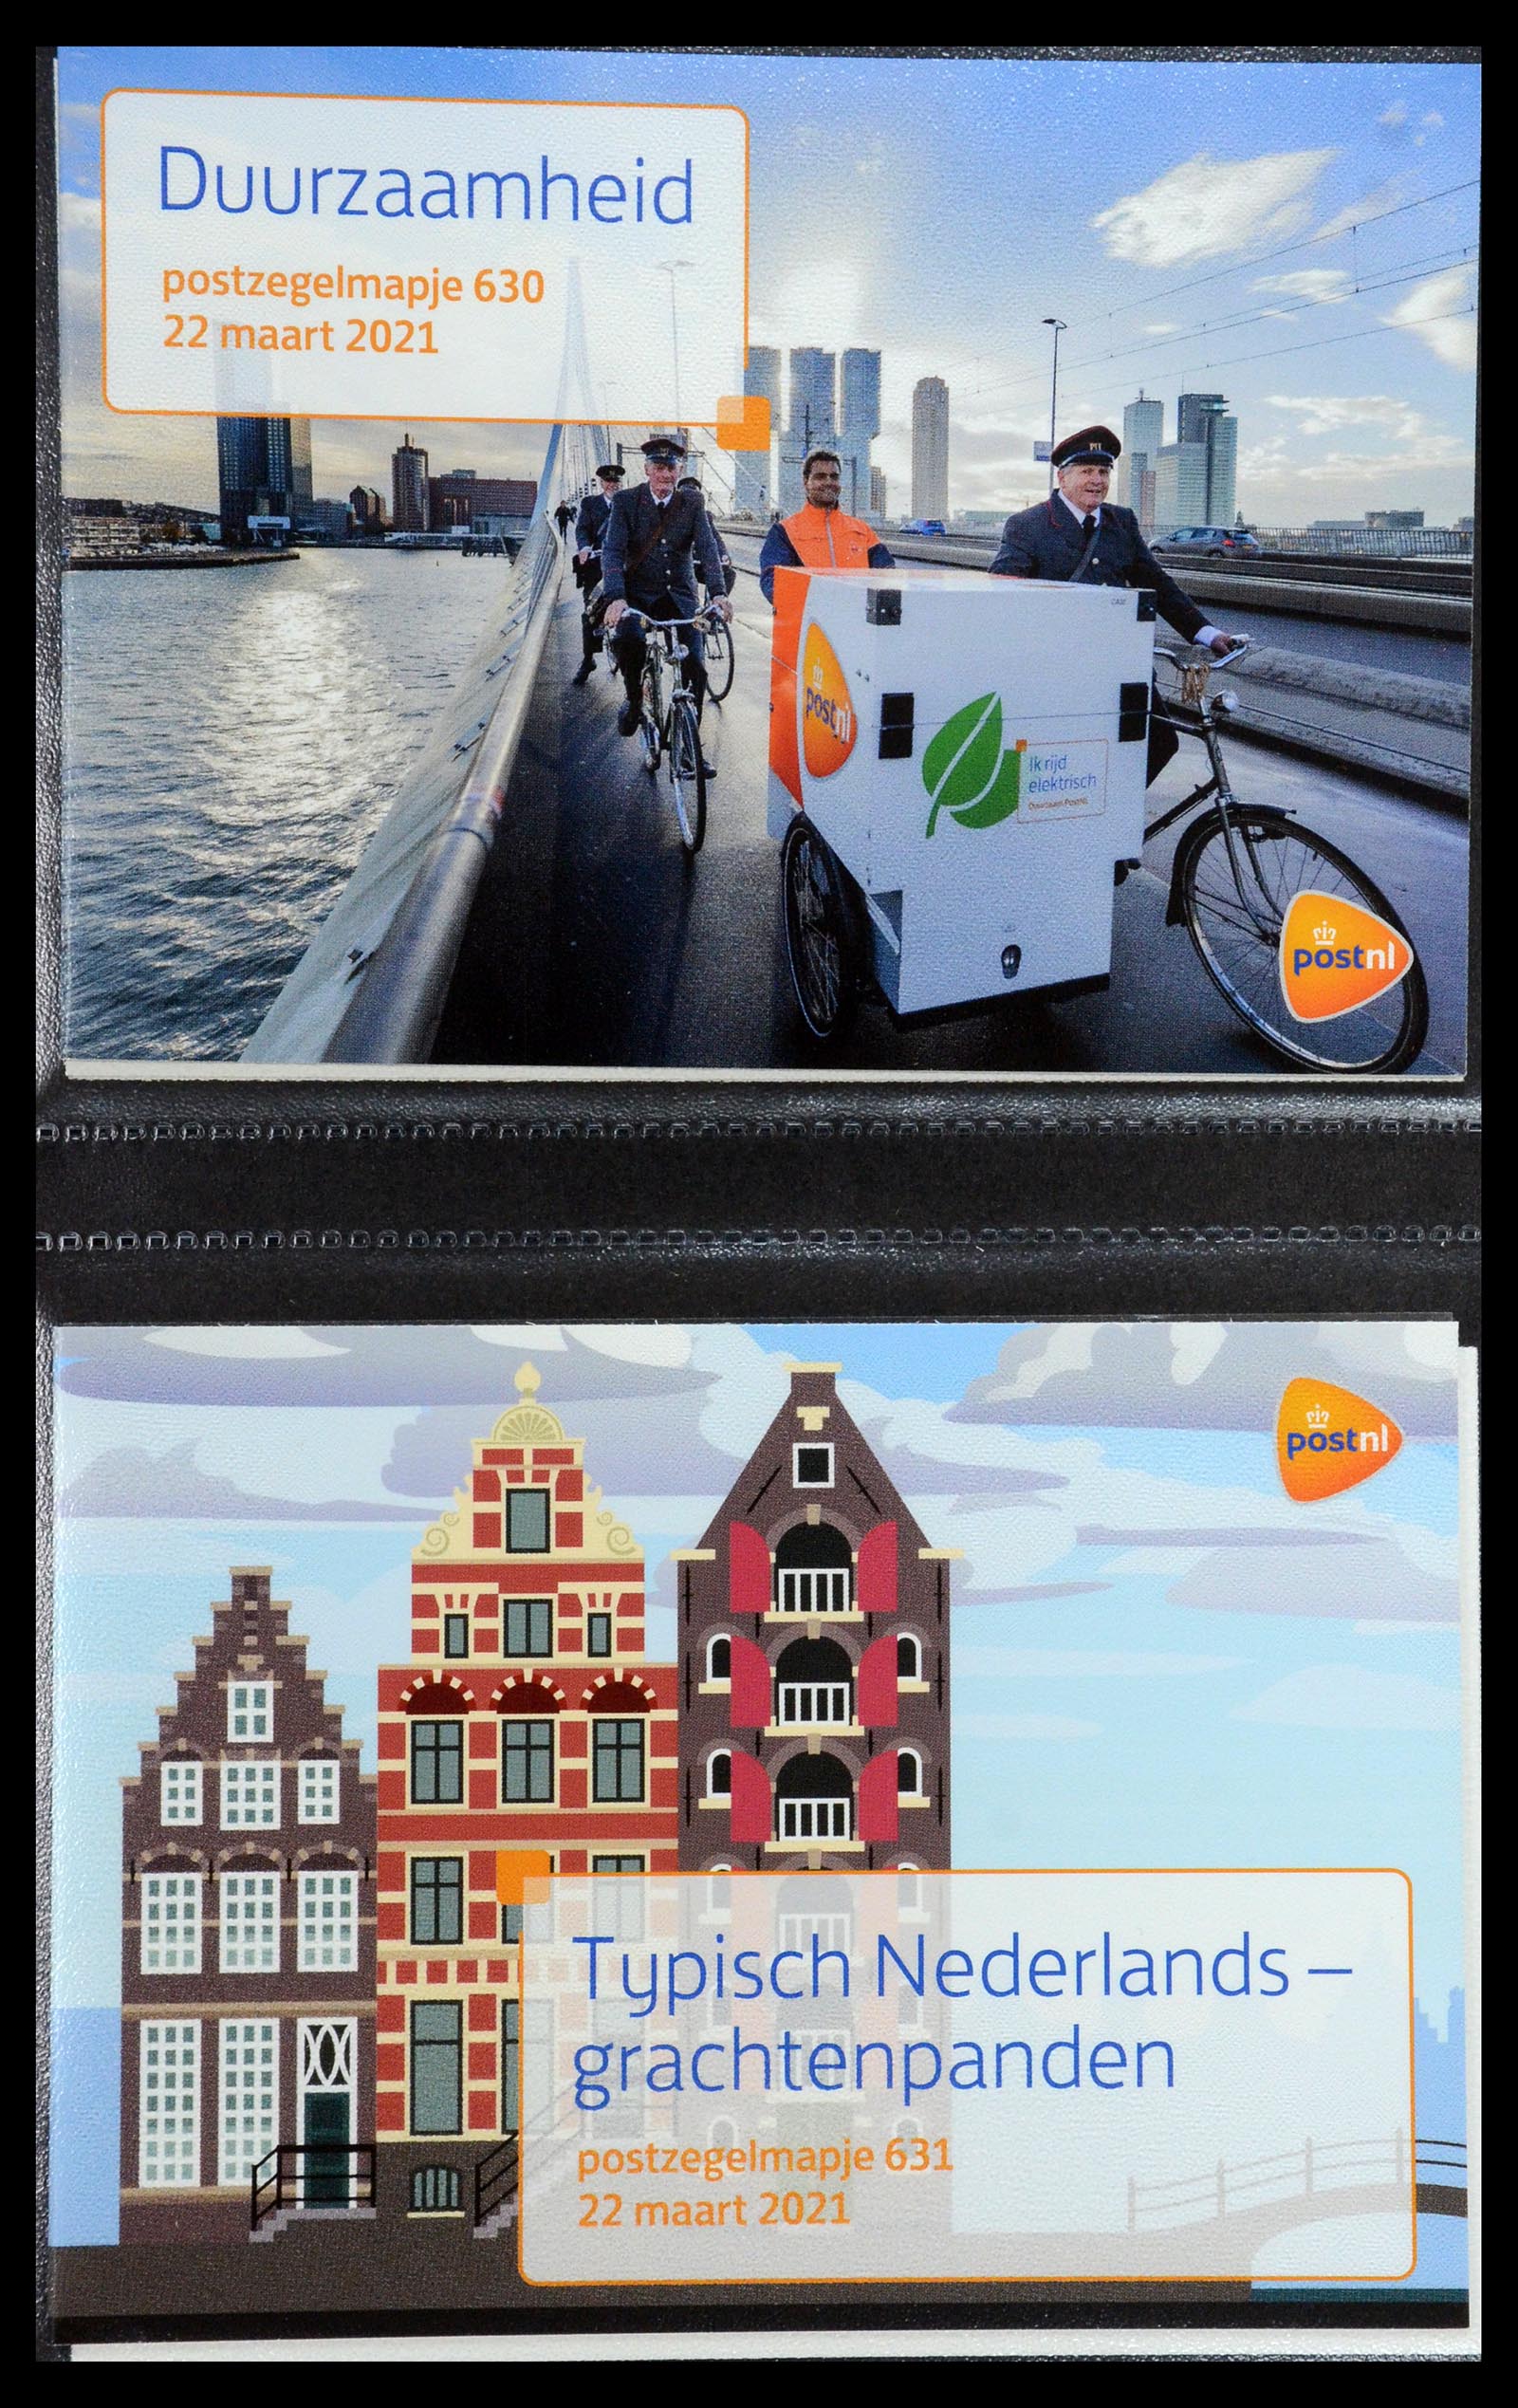 35144 382 - Stamp Collection 35144 Netherlands PTT presentation packs 1982-2021!